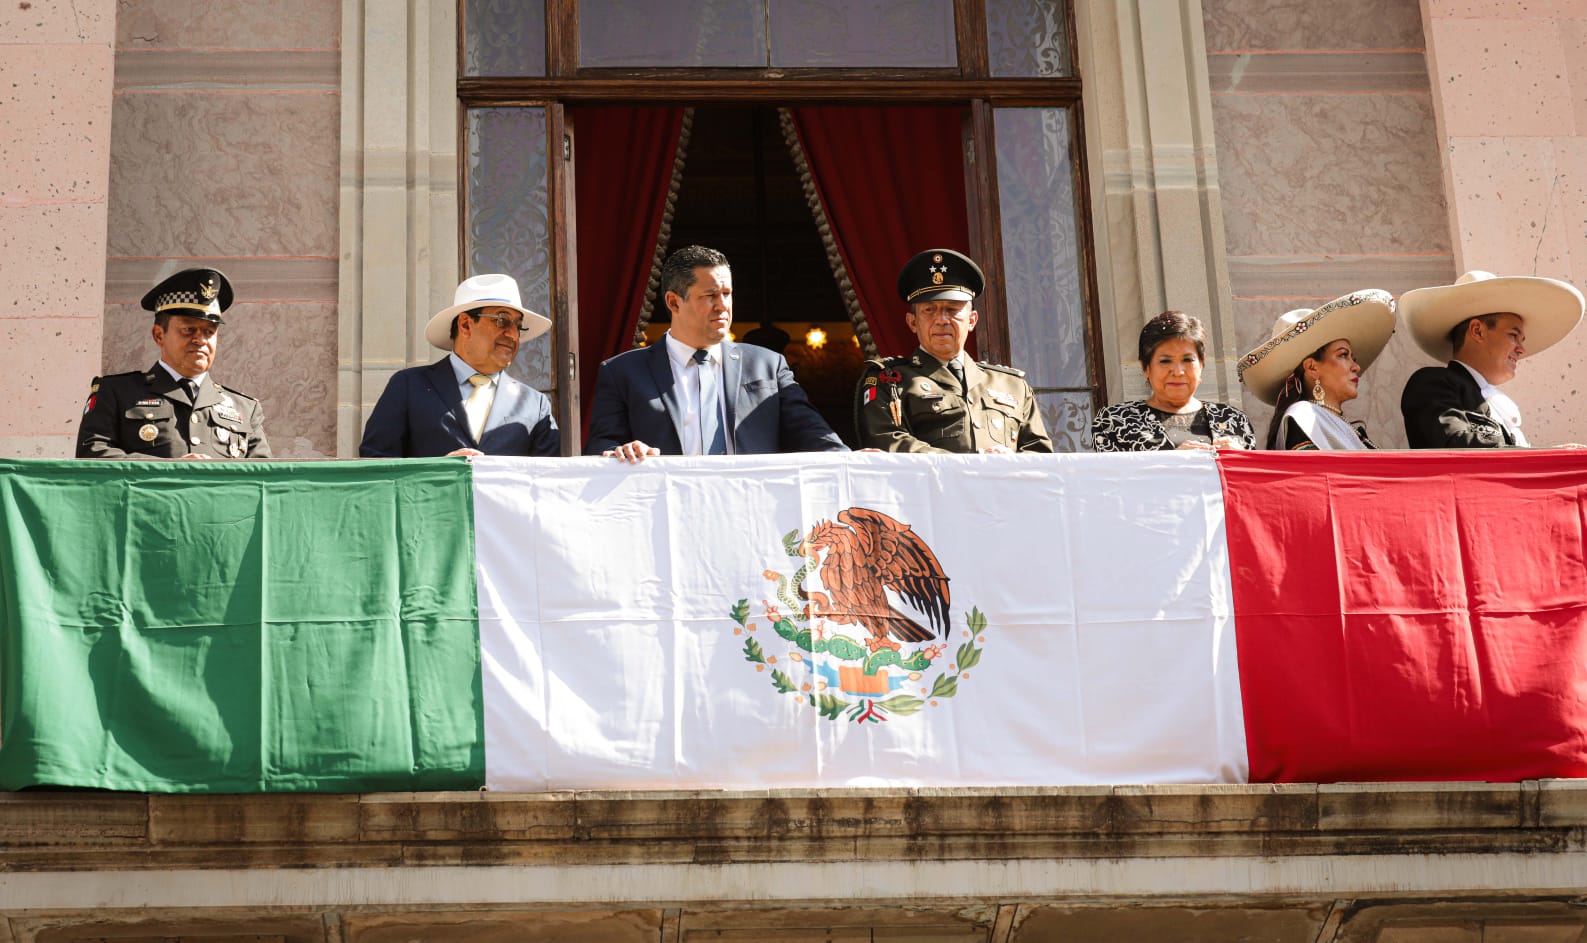 Hoy Guanajuato vibra con pasión y patriotismo, como hace 213 años: Diego Sinhue Rodríguez  